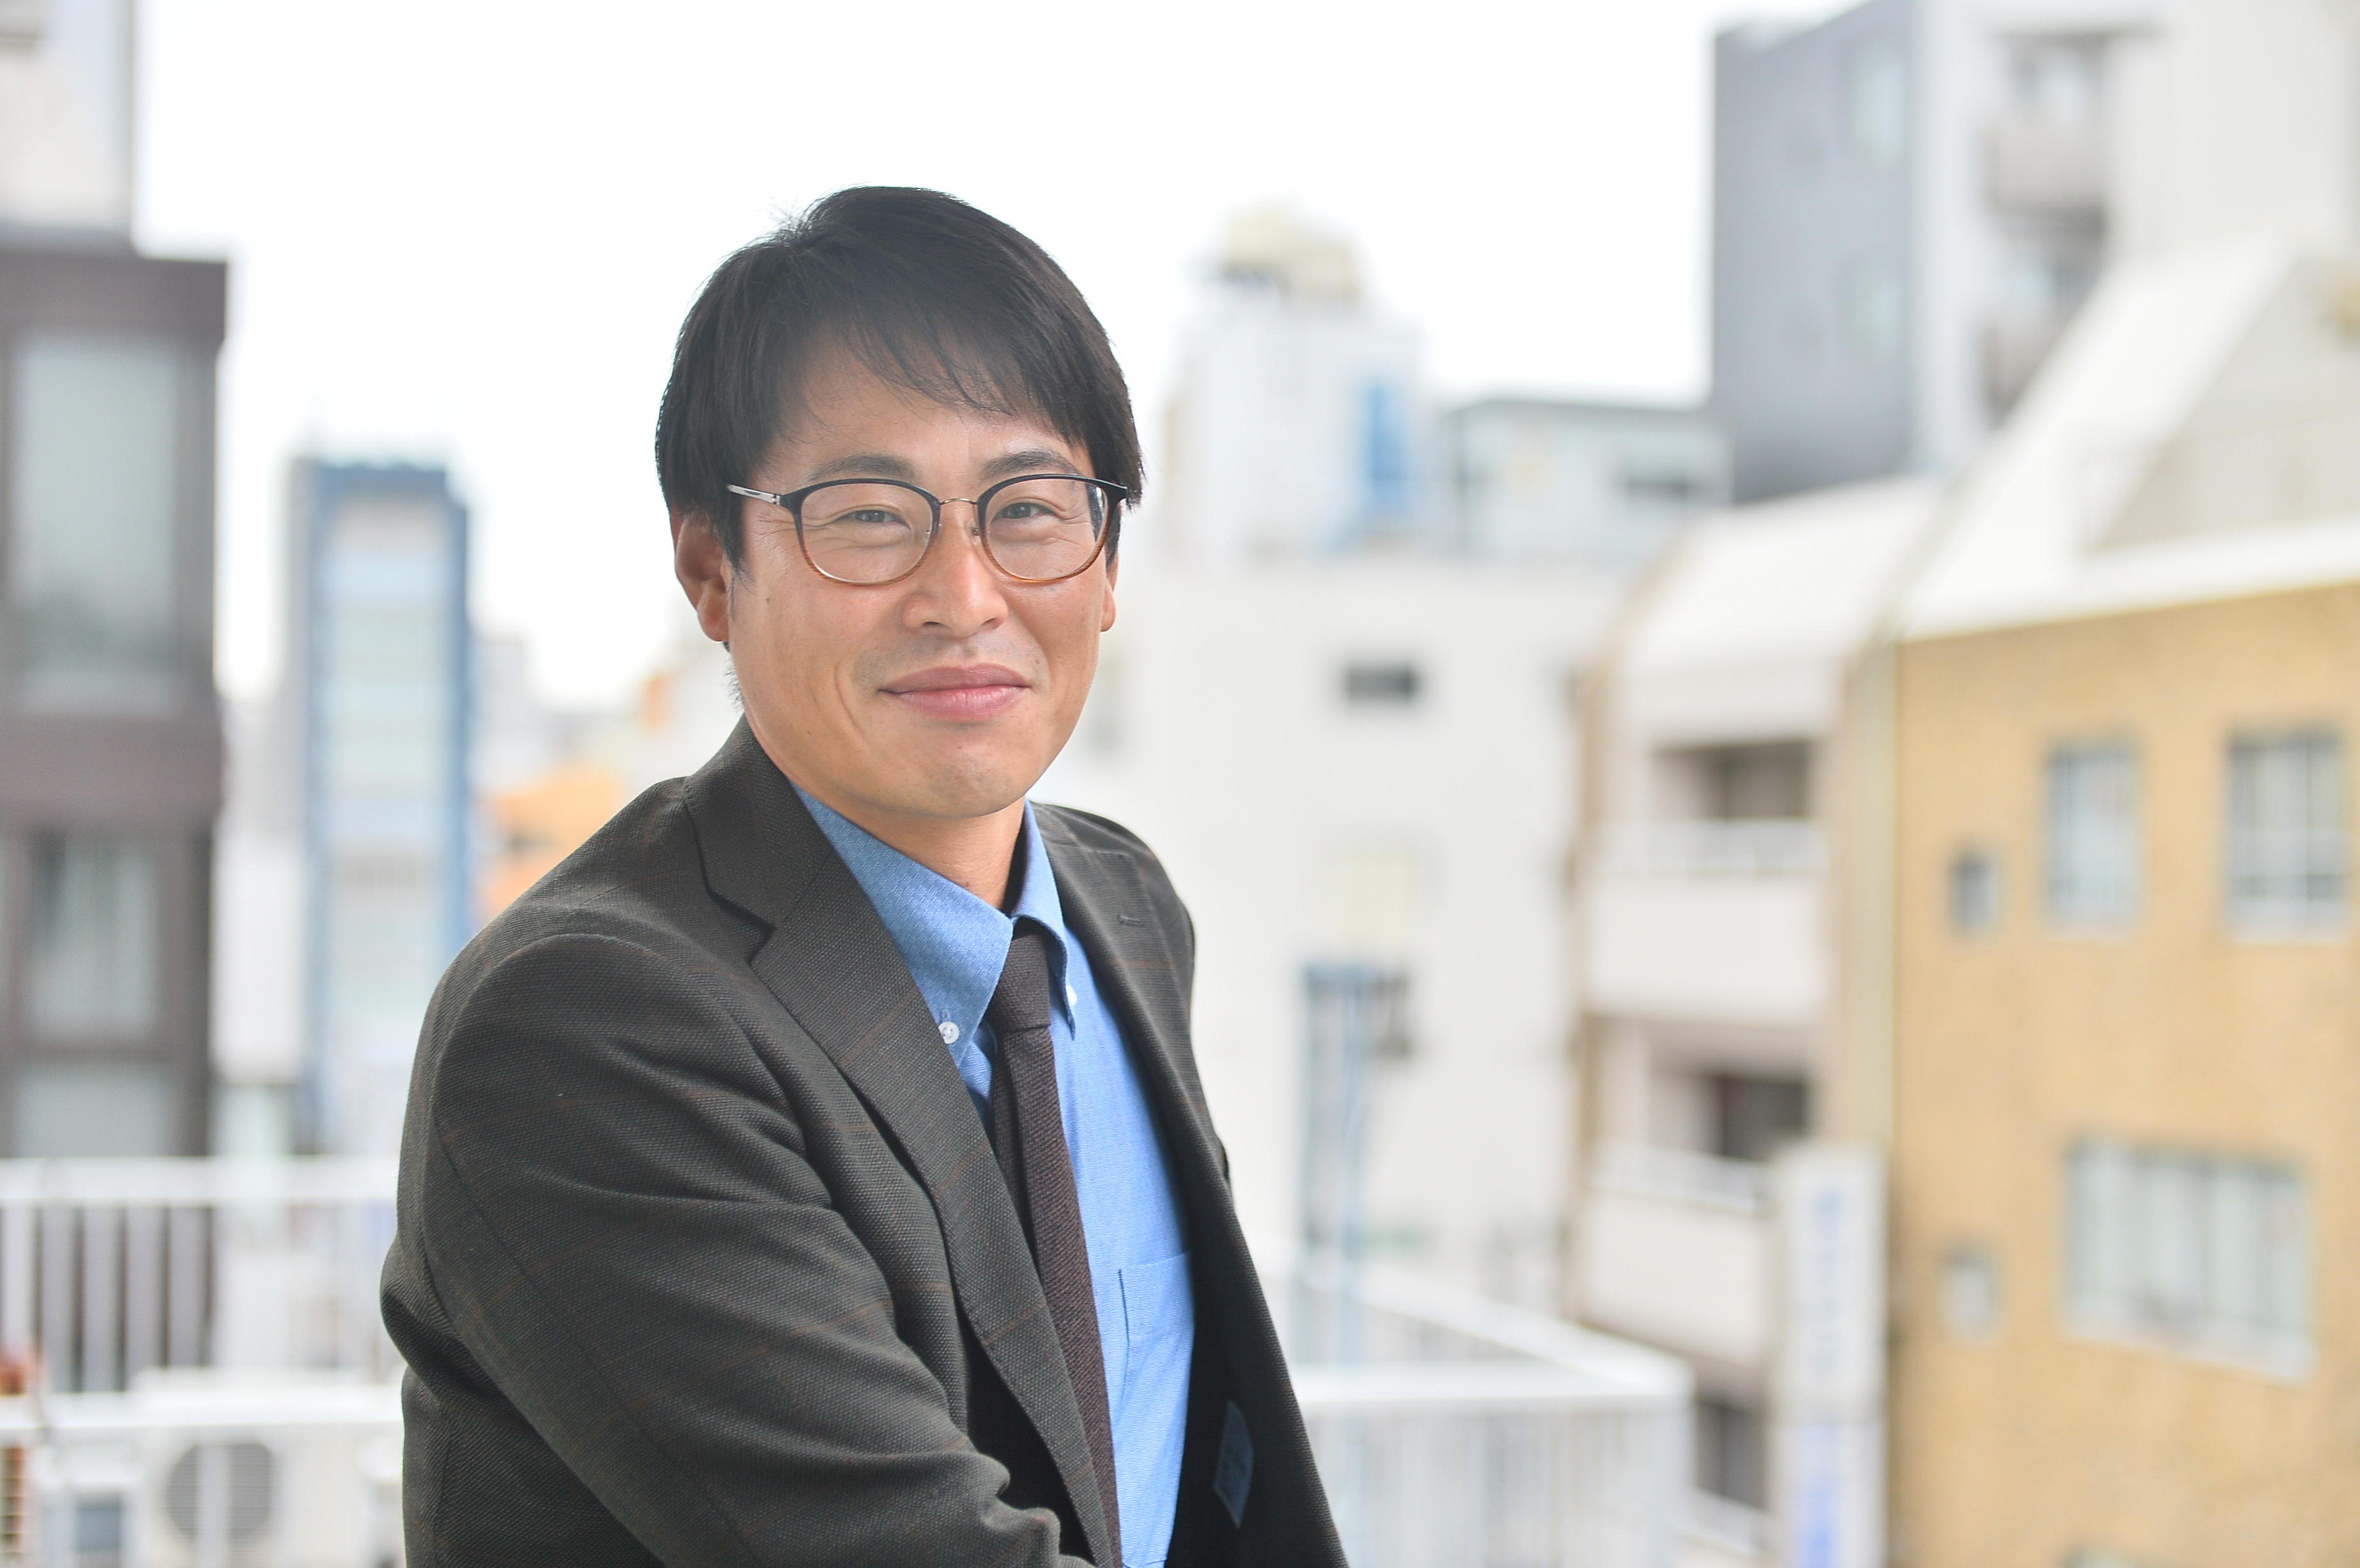 代表取締役　岩瀬 理哉氏
2018年1月にハイクラウドを設立後、同社の成長を牽引してきた。